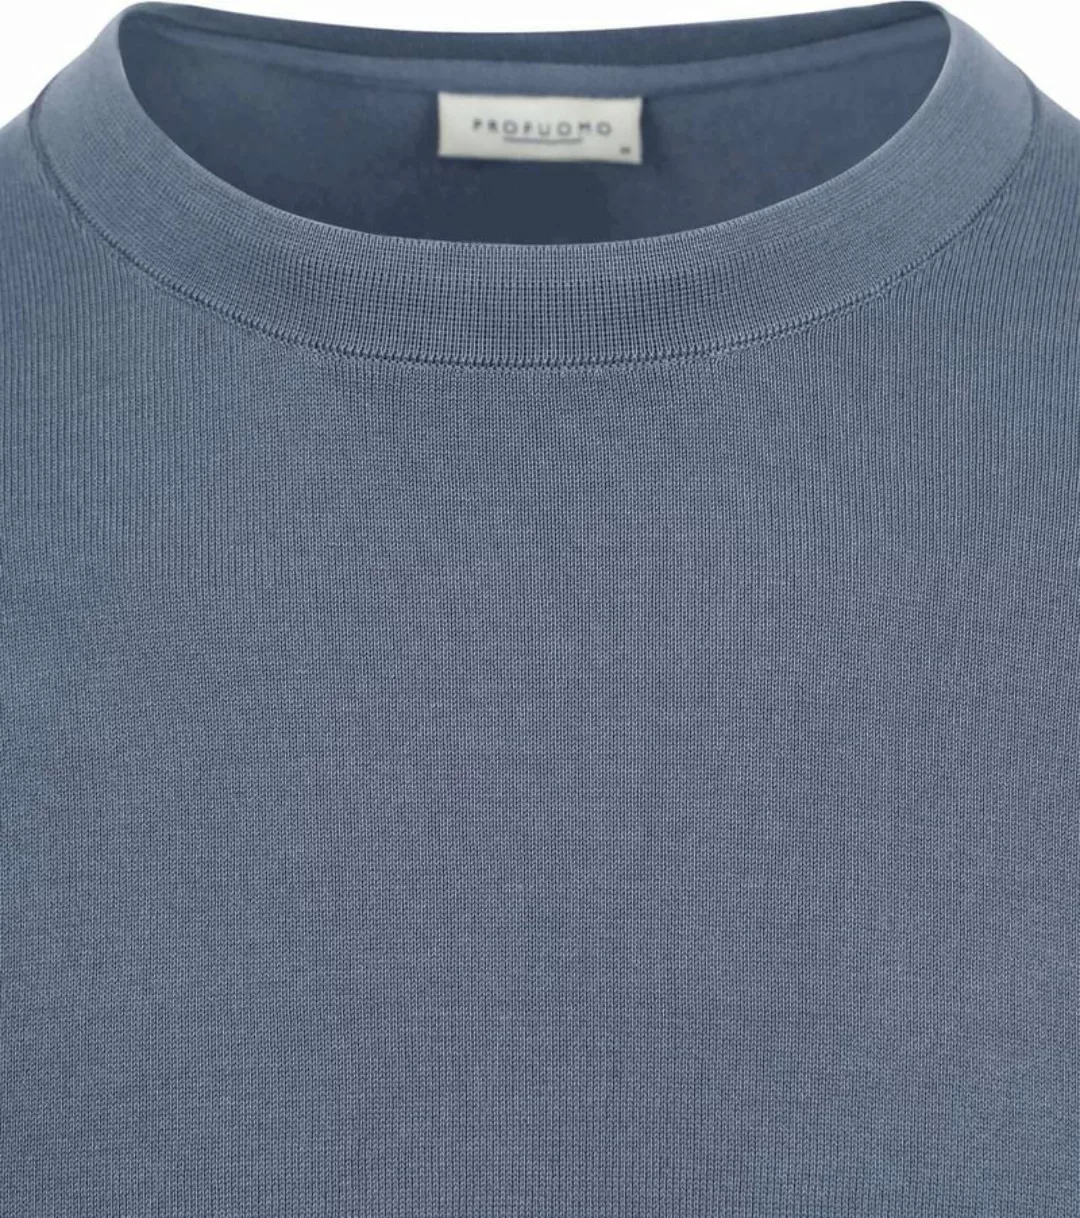 Profuomo Pullover Luxury Blau - Größe M günstig online kaufen